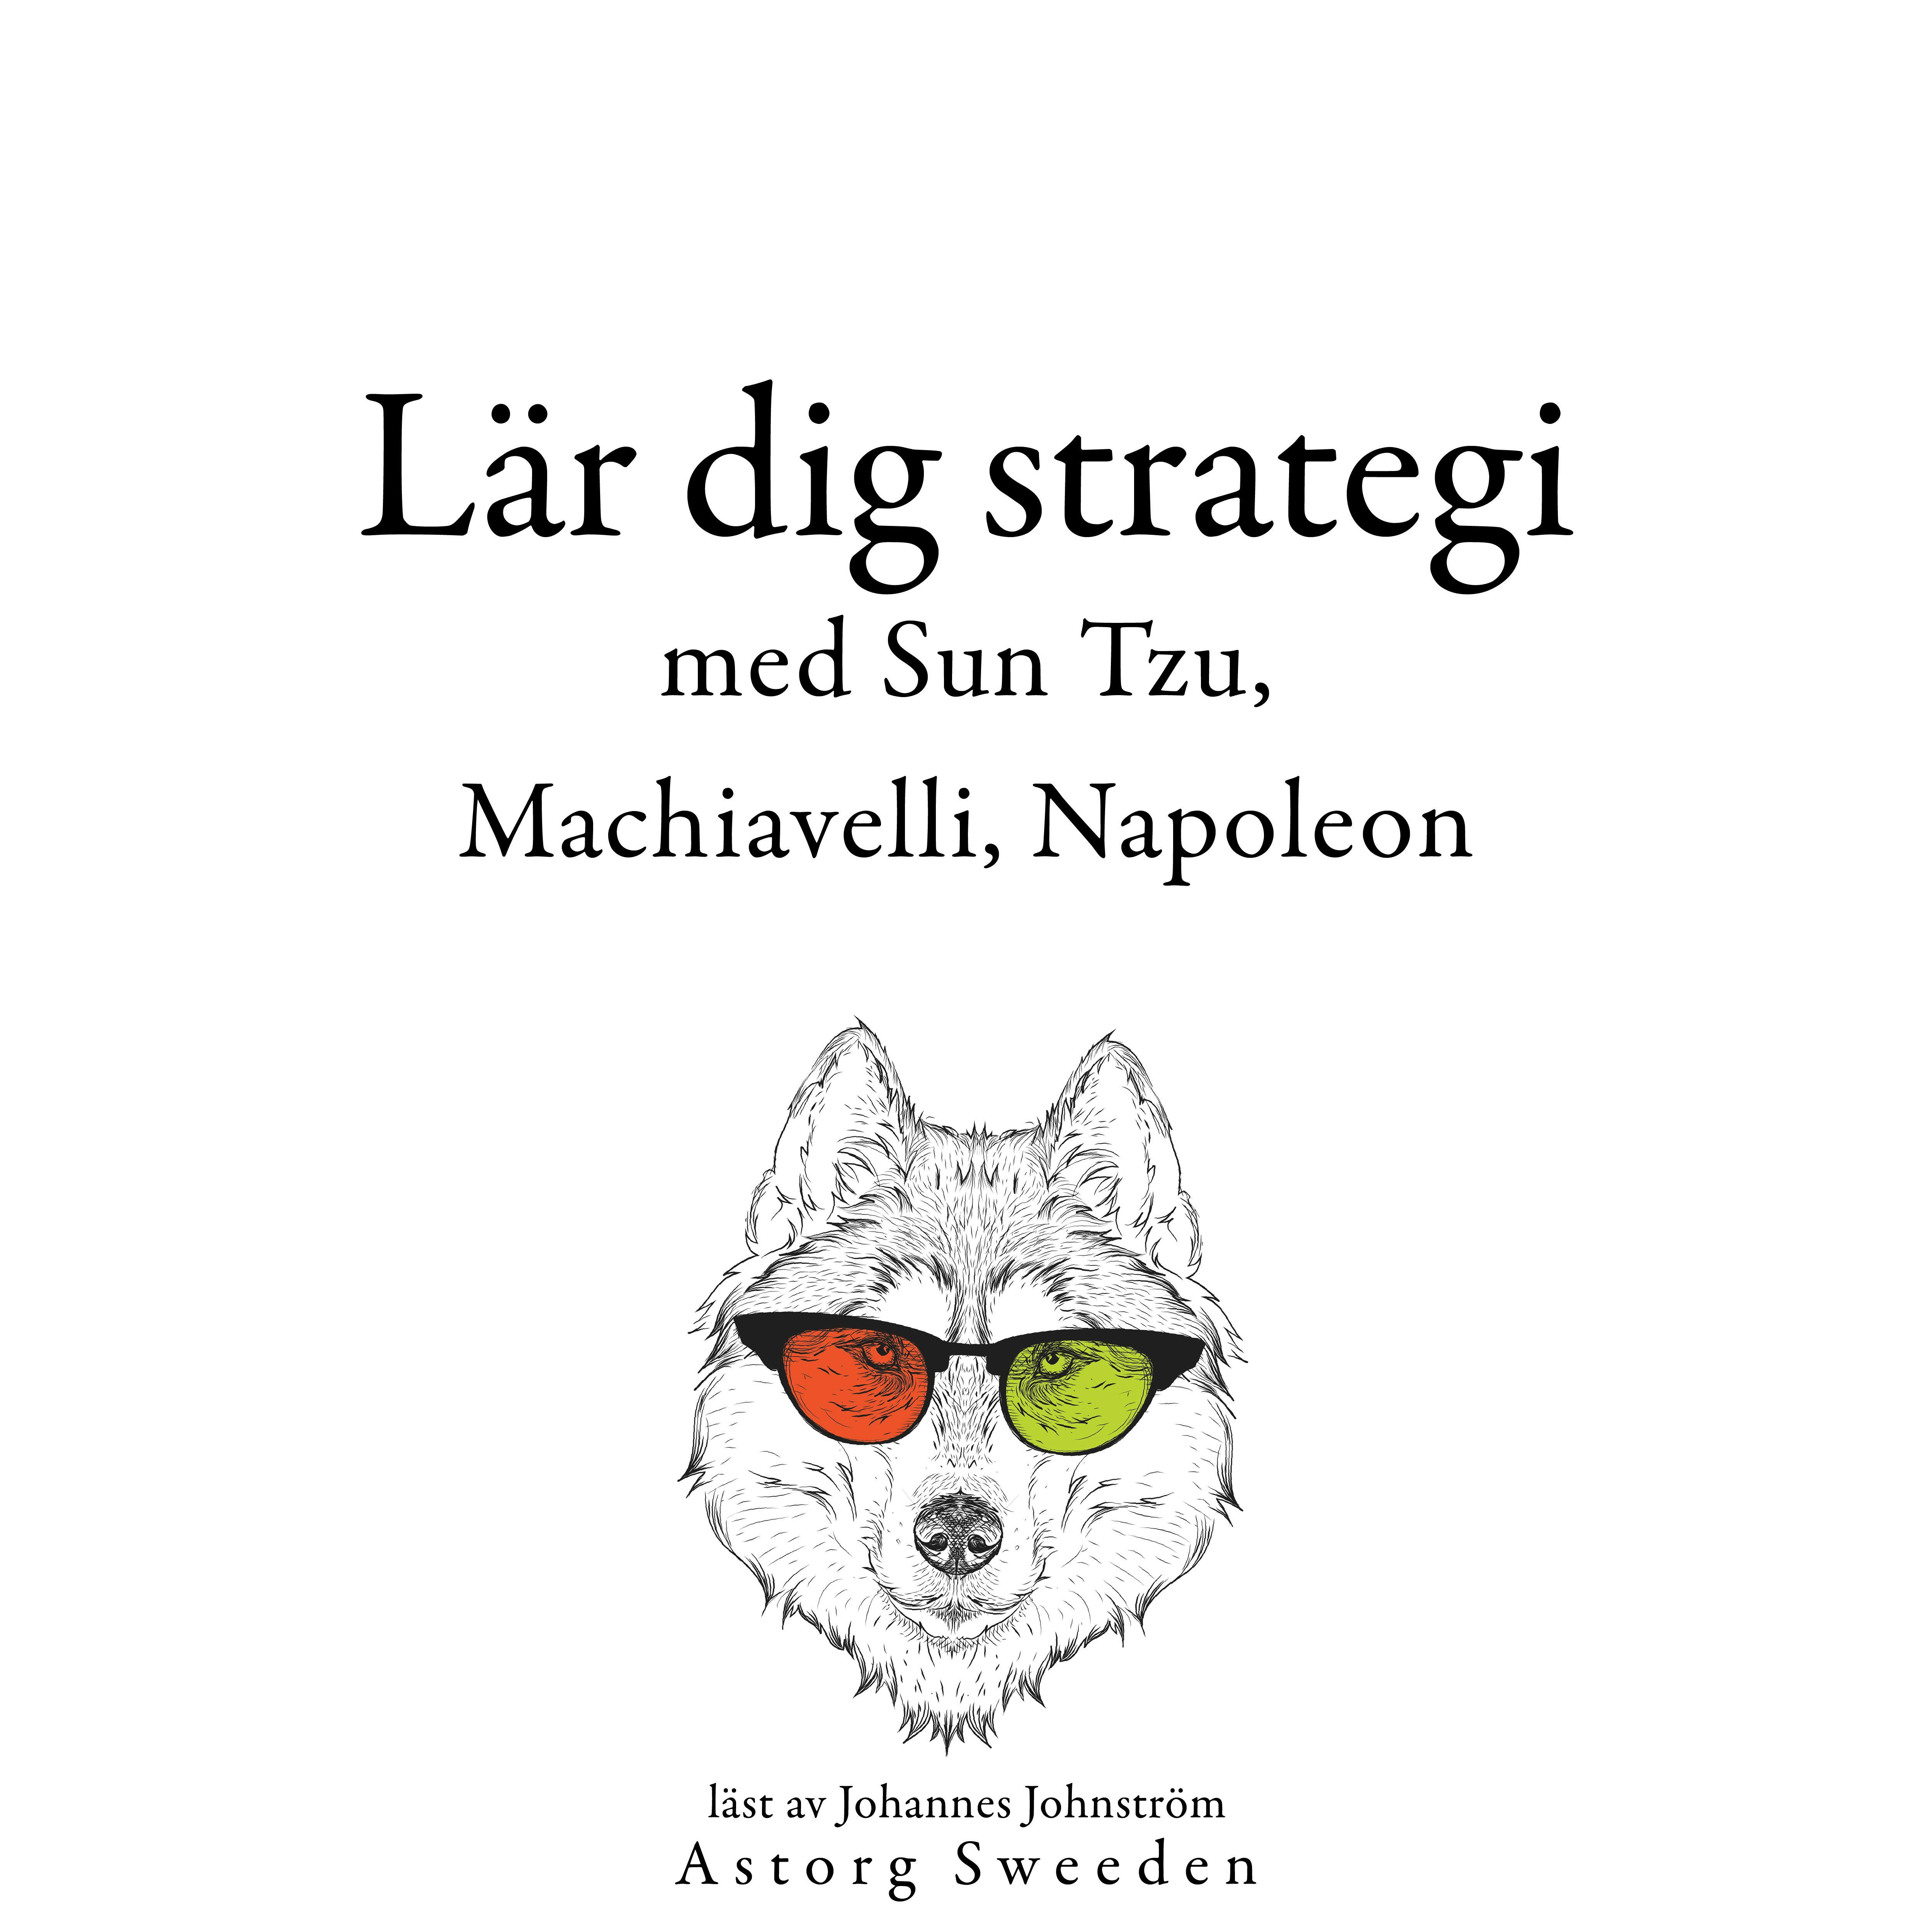 Lär dig strategi med Sun Tzu, Machiavelli, Napoleon ...: Samling av de bästa citat - Multiple Authors